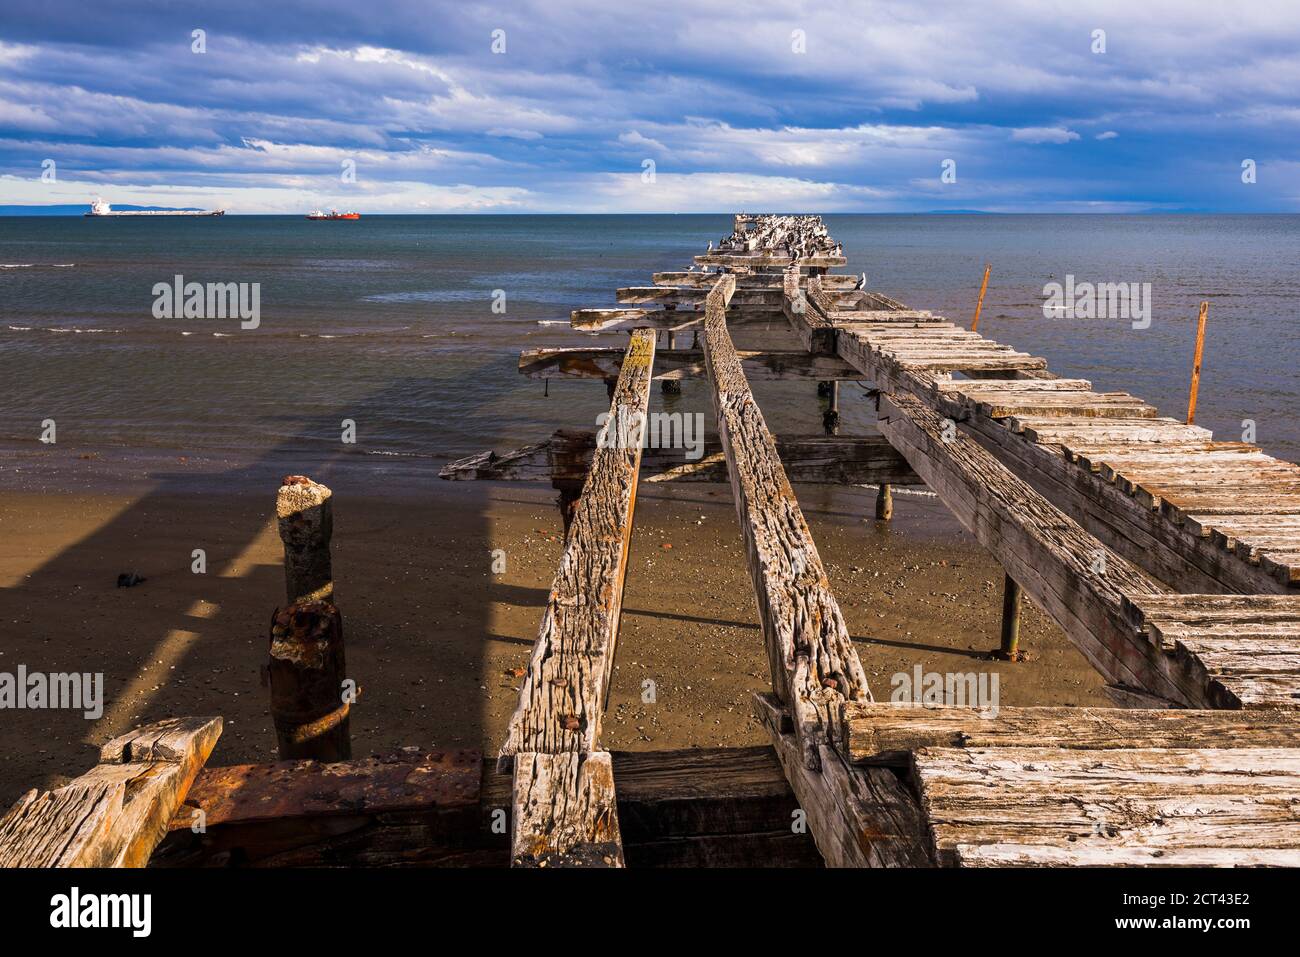 Alte Pier in Punta Arenas, Magallanes und Antartica Chilena Region, chilenisches Patagonien, Chile, Südamerika Stockfoto